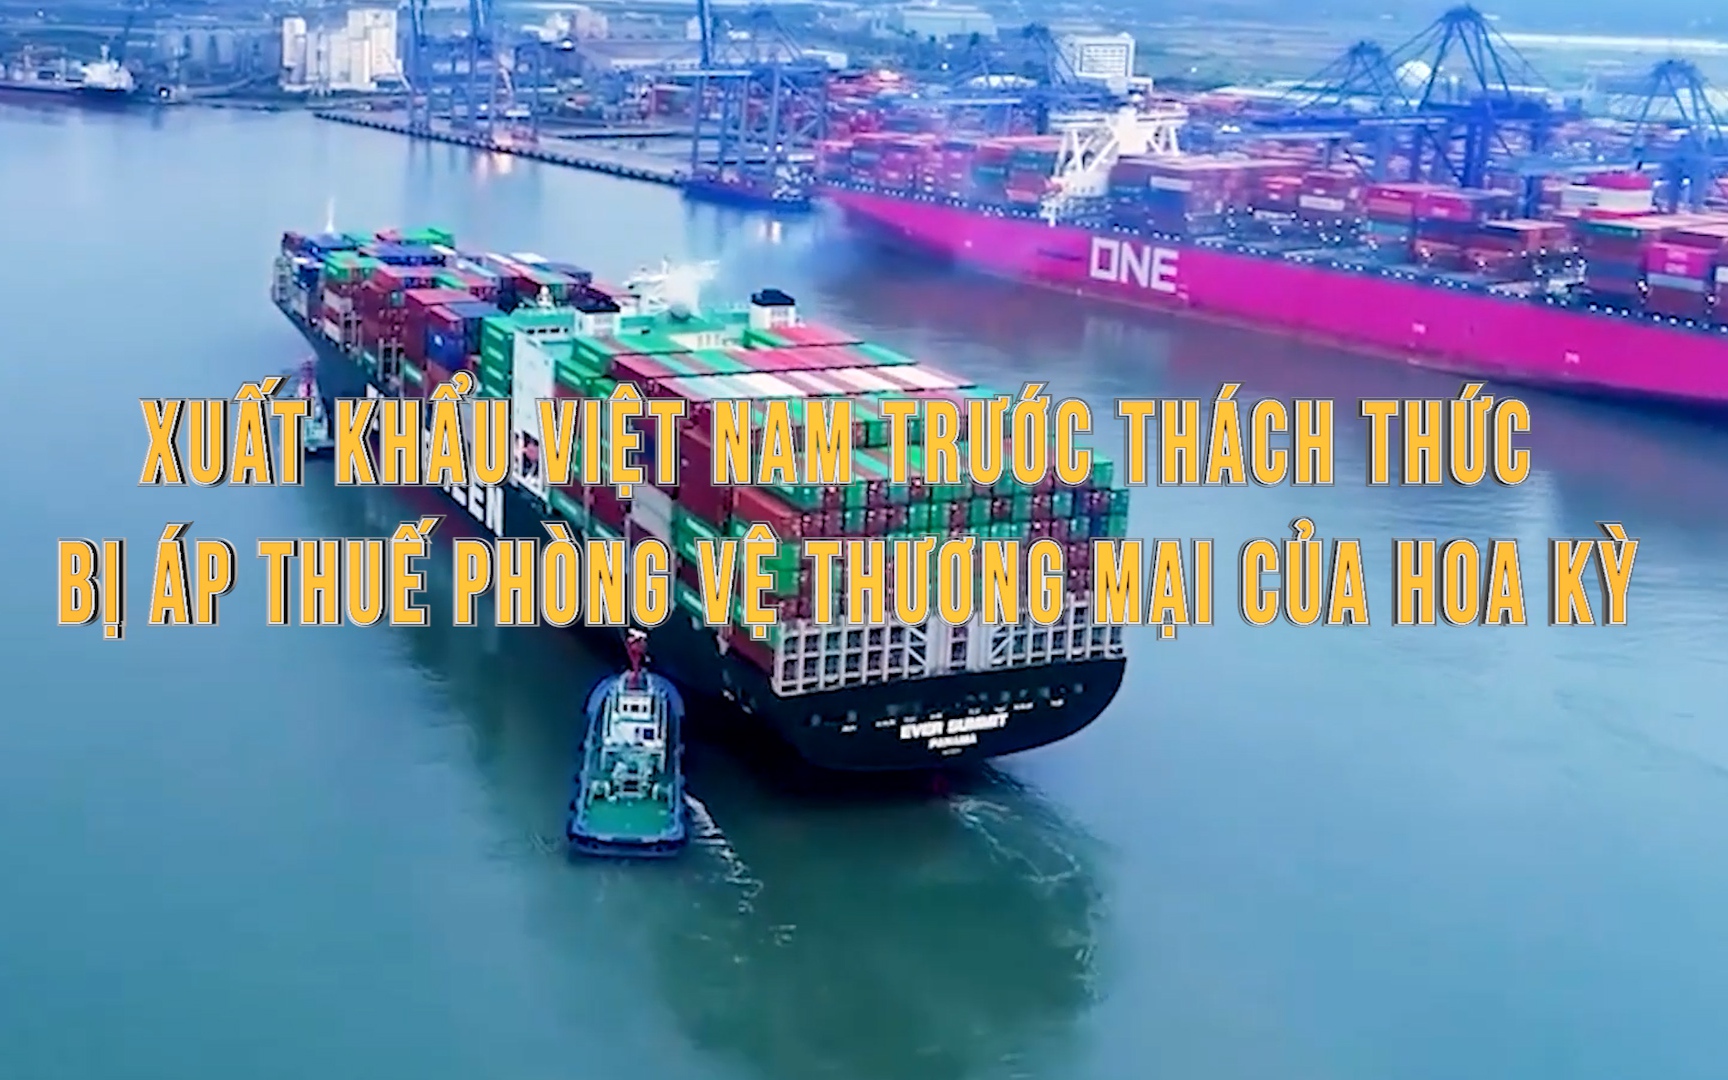 Video: Xuất khẩu Việt Nam trước thách thức bị áp thuế phòng vệ thương mại của Hoa Kỳ